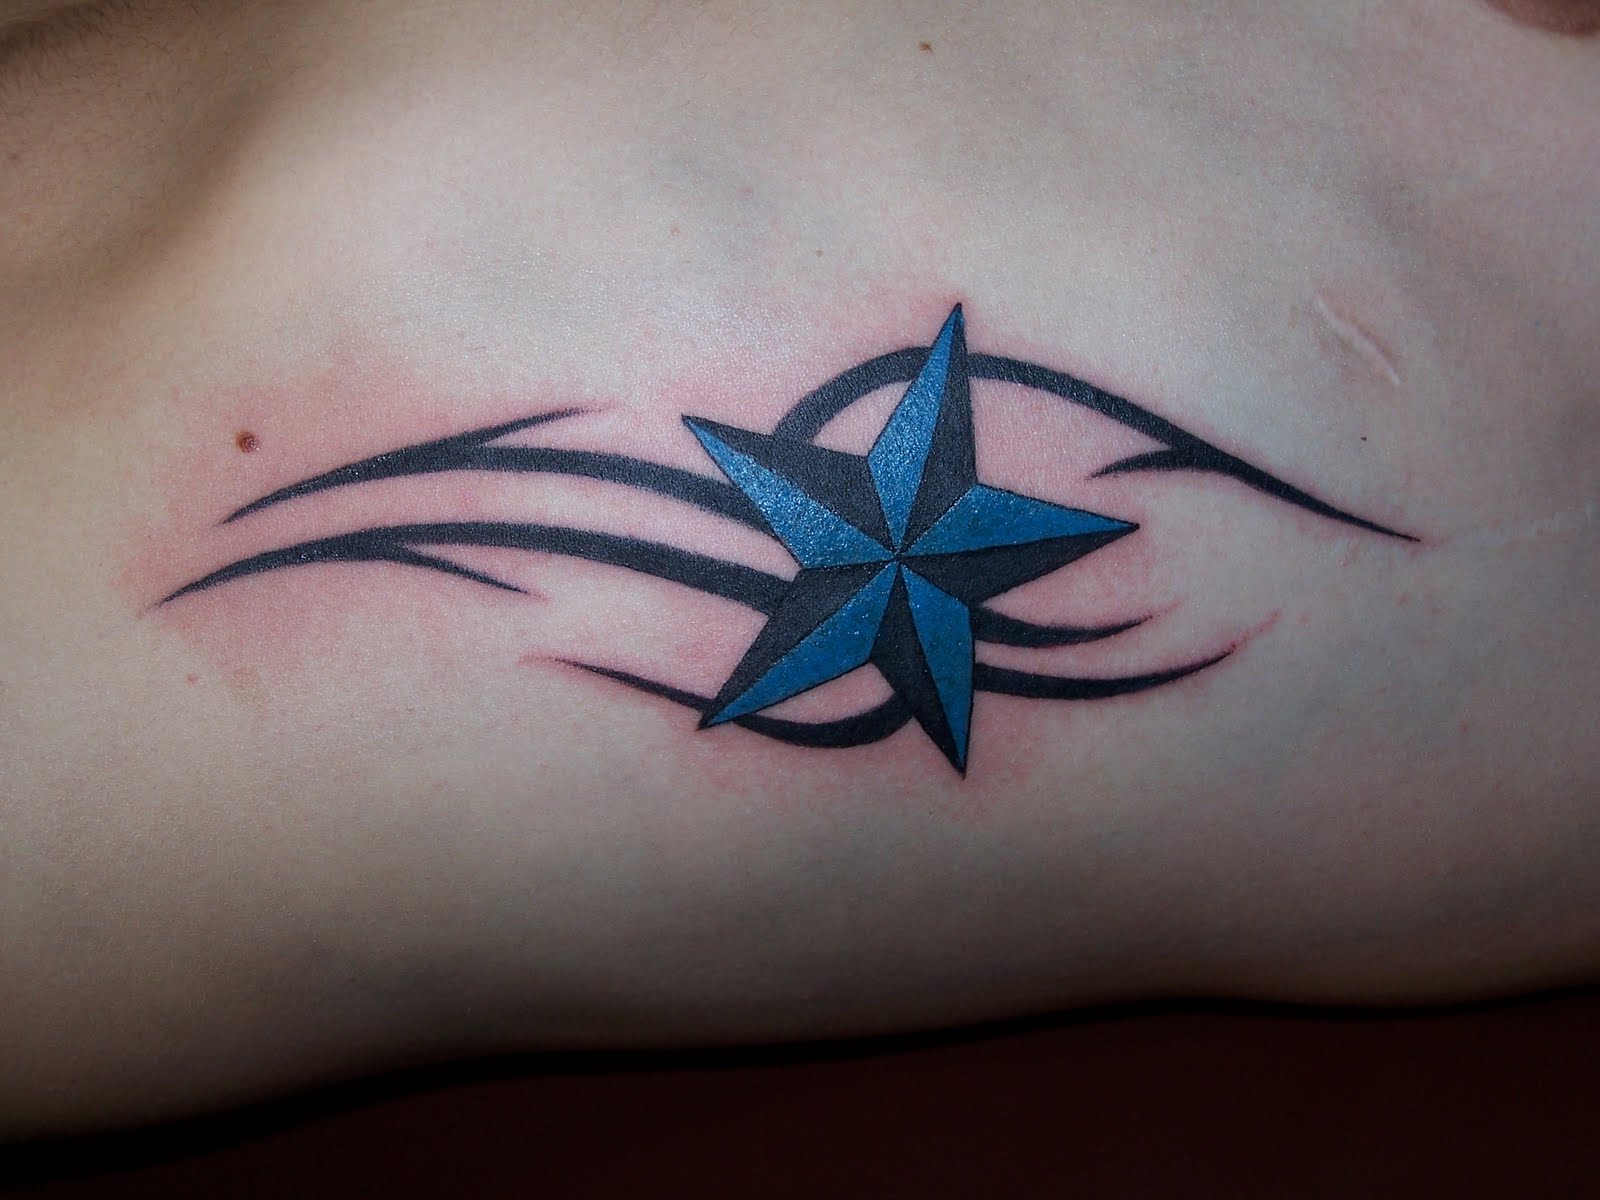 http://3.bp.blogspot.com/-P6TbhKONmOc/TnDoH5LSQMI/AAAAAAAAA3s/R5J0r9DXNto/s1600/images+star+tattoos.JPG